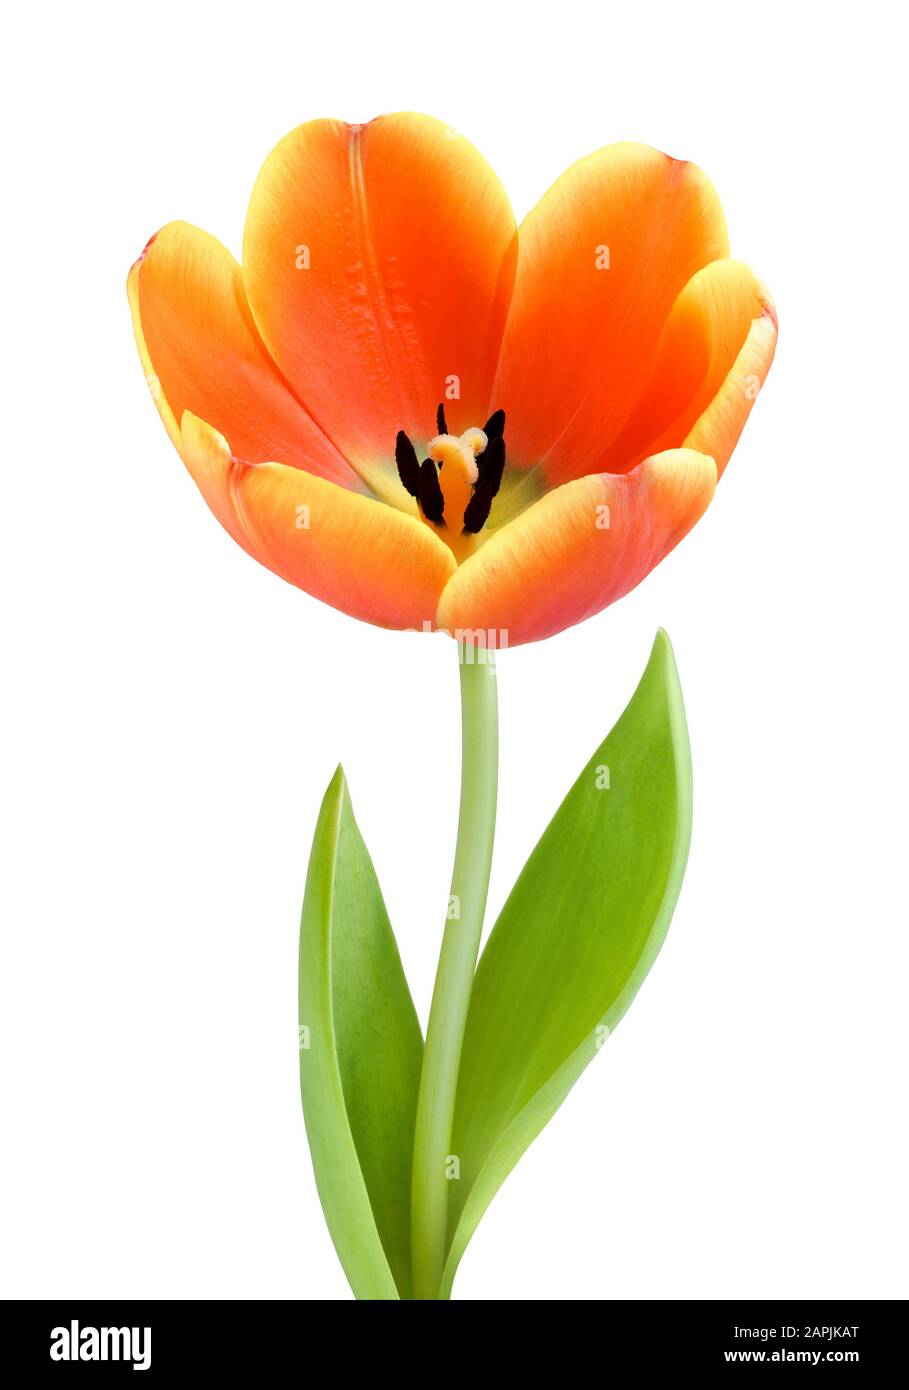 Tulipe orange entièrement fleuri, studio isolé sur fond blanc Banque D'Images